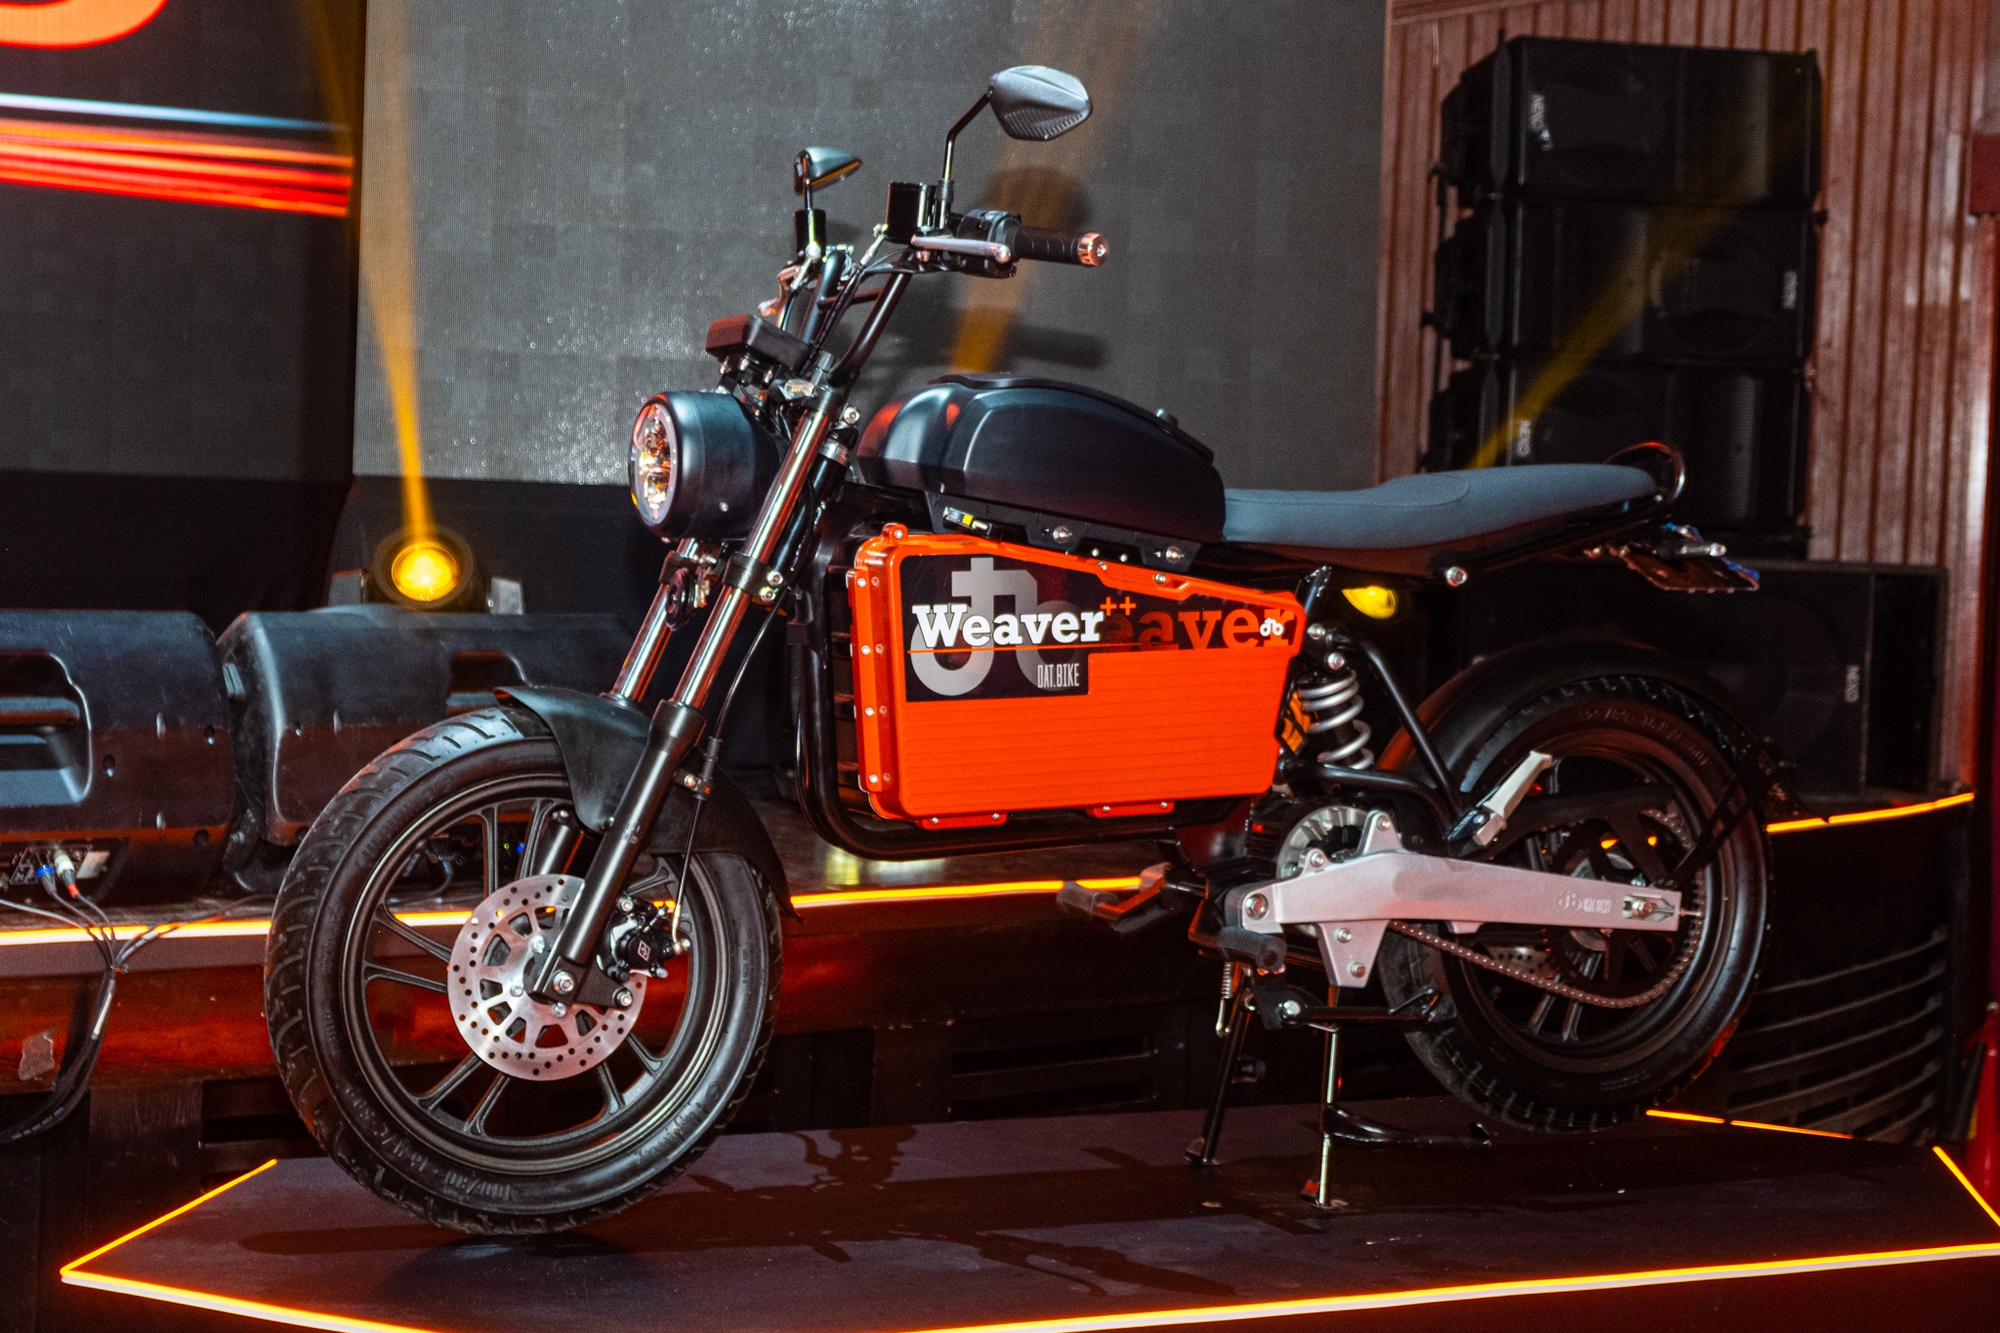 Ra mắt Dat Bike Weaver++: Giá 65,9 triệu đồng, dáng cổ điển, sạc nhanh chưa từng có tại Việt Nam - Ảnh 2.